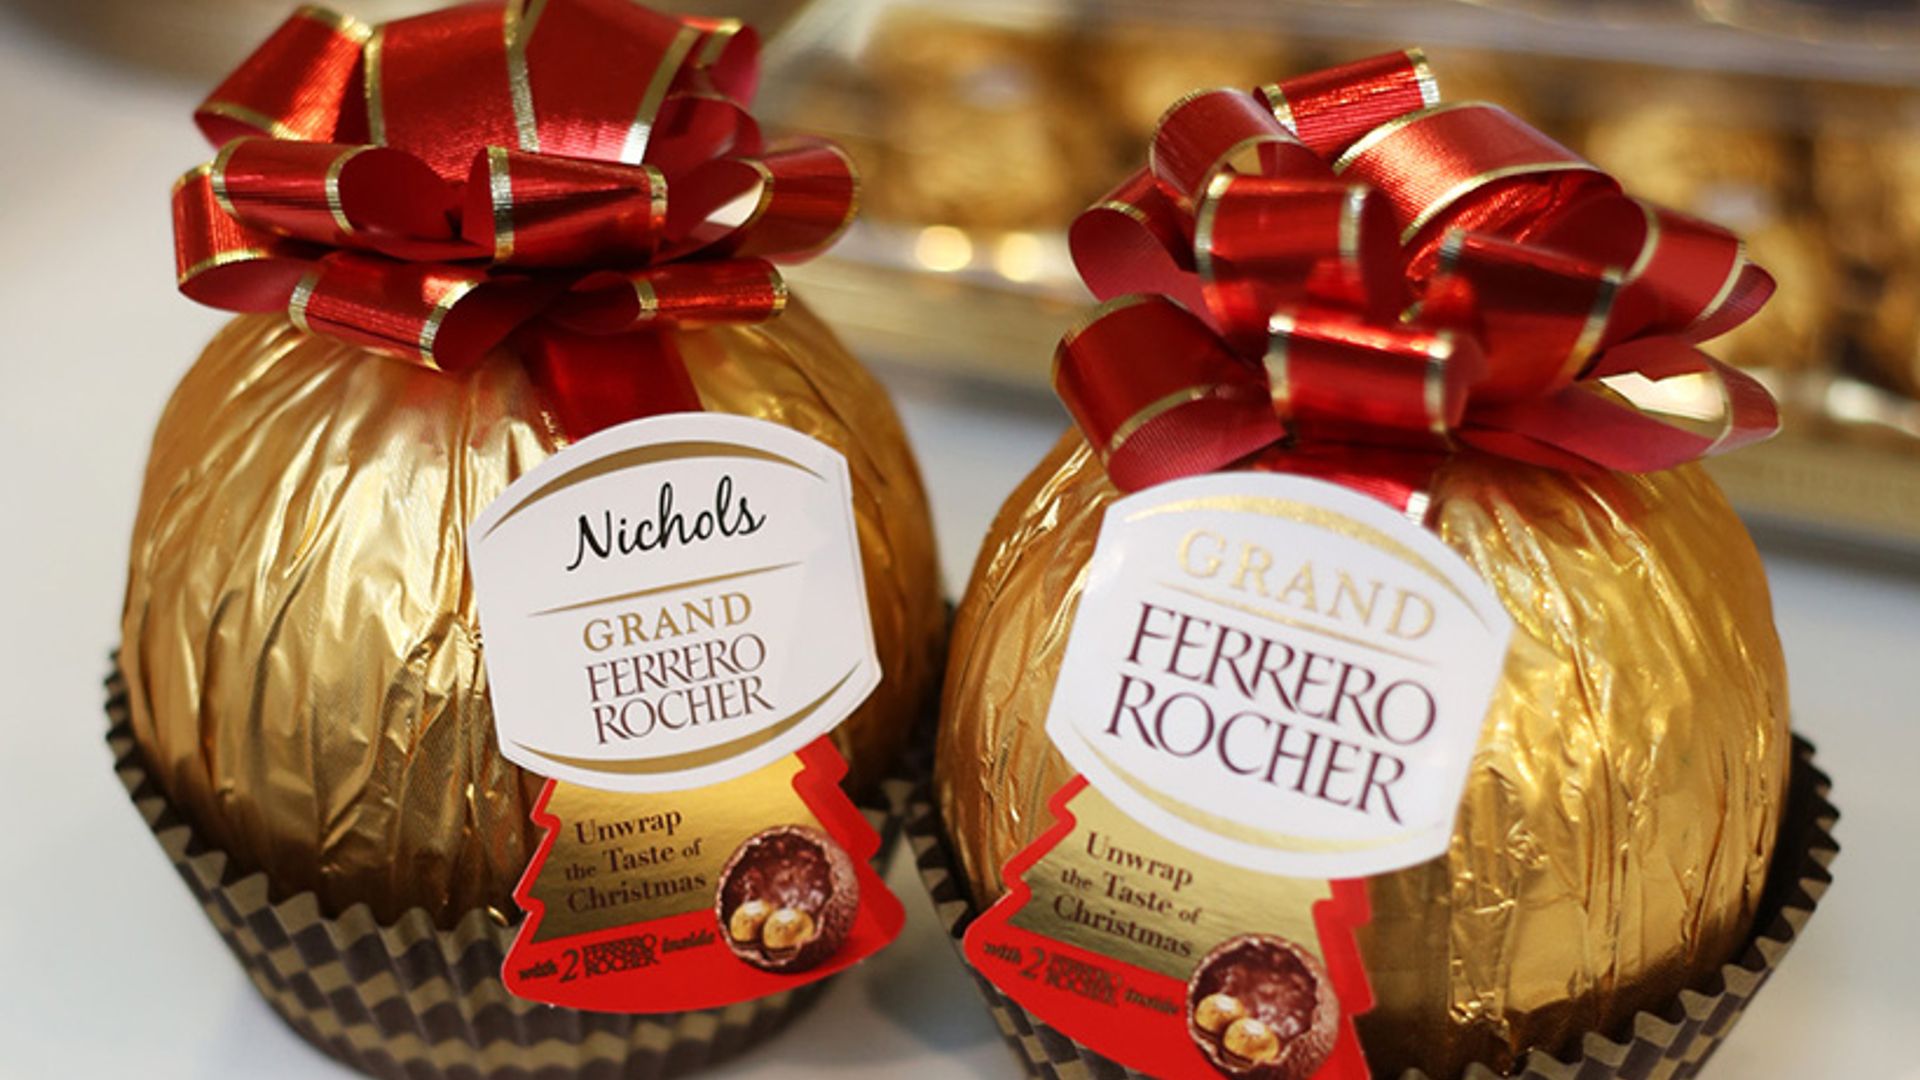 Ferrero шампанское. Ферреро Роше. Ферреро Роше Grand. Ferrero Rocher шоколад. Реклама конфет Ферреро Роше.